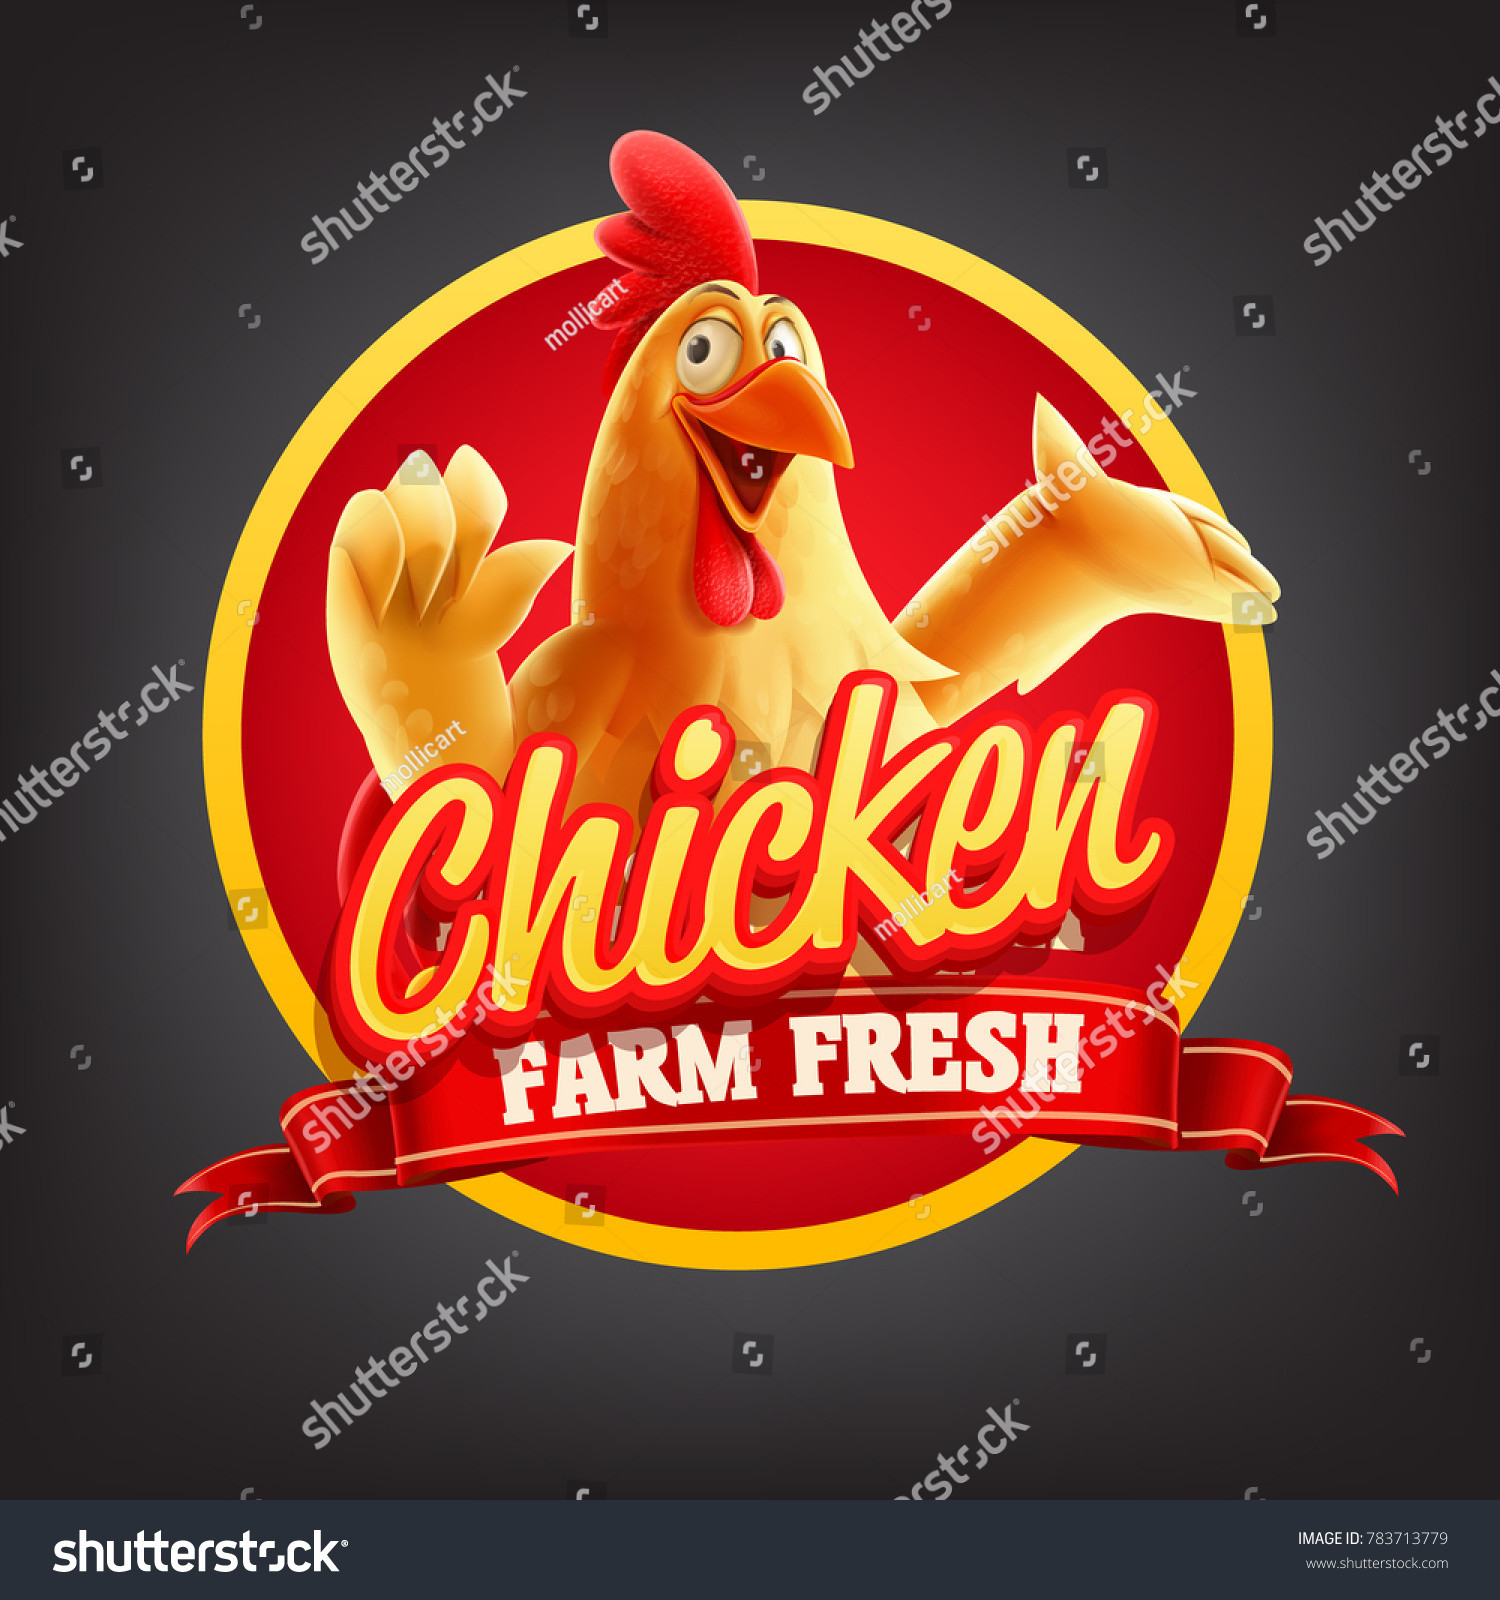 stock vector chicken banner illustration